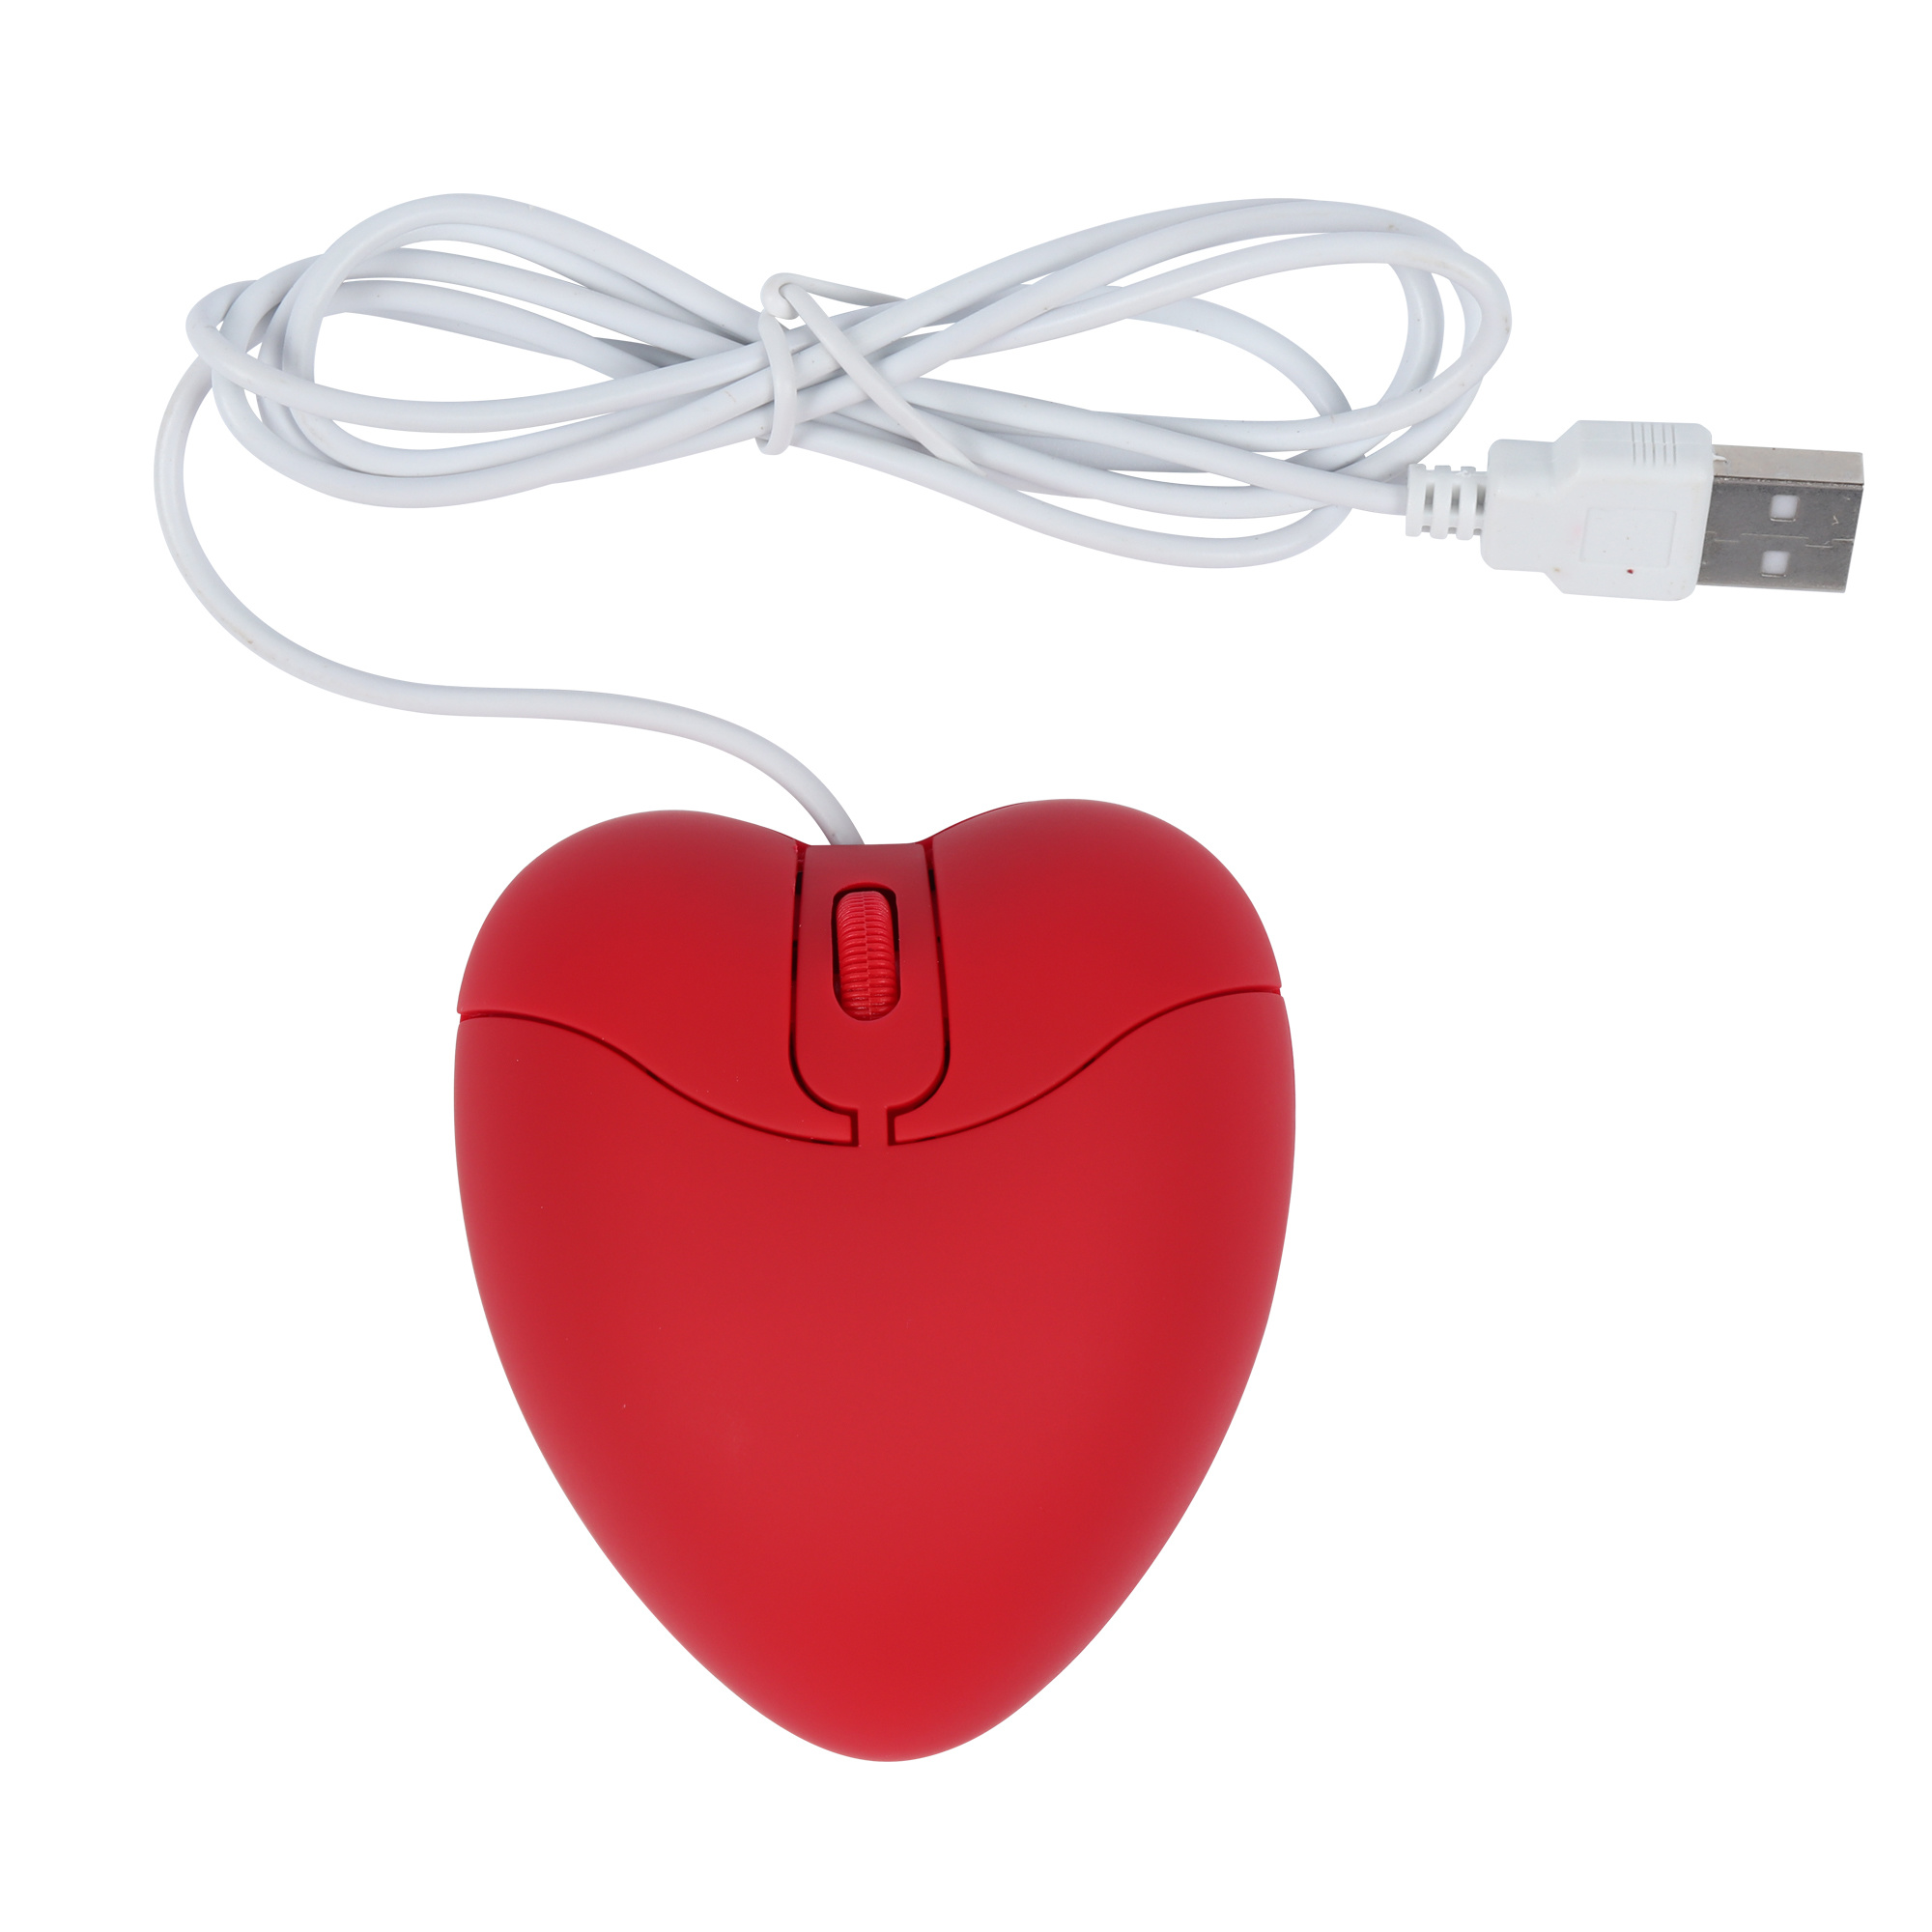 كمبيوتر-ماوس سلكي-USB-بصري-إبداعي-للألعاب-Cute-Mause-Ergonomic-Love-Heart-3D-Mice-For-Laptop (2)